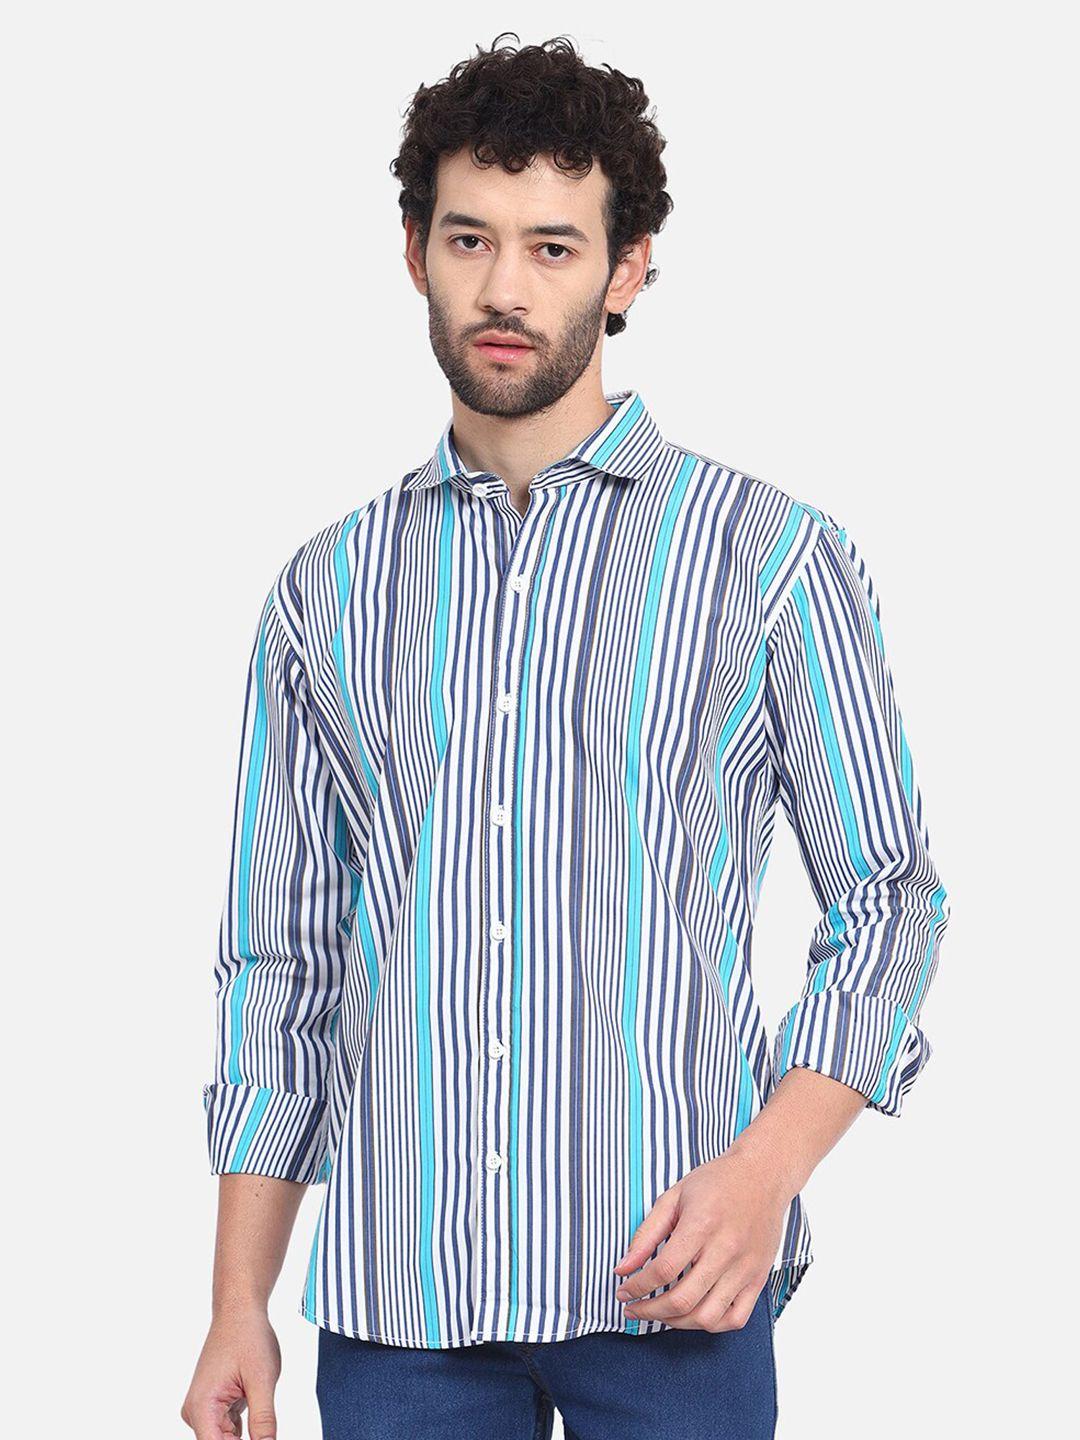 dezano premium vertical striped cotton casual shirt